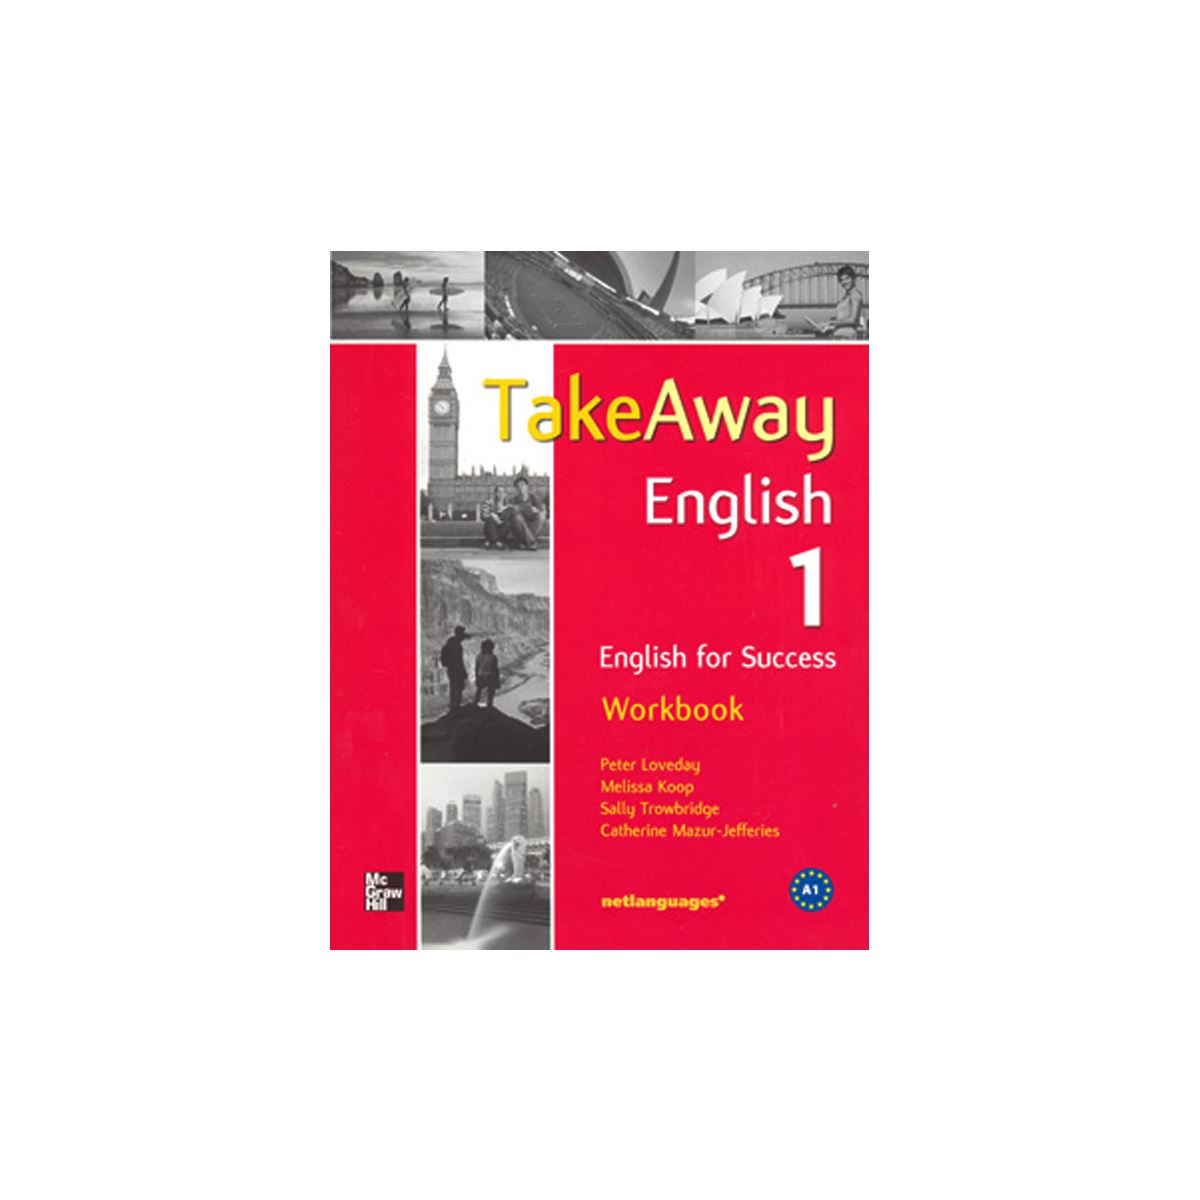 Takeaway English 1 Workbook